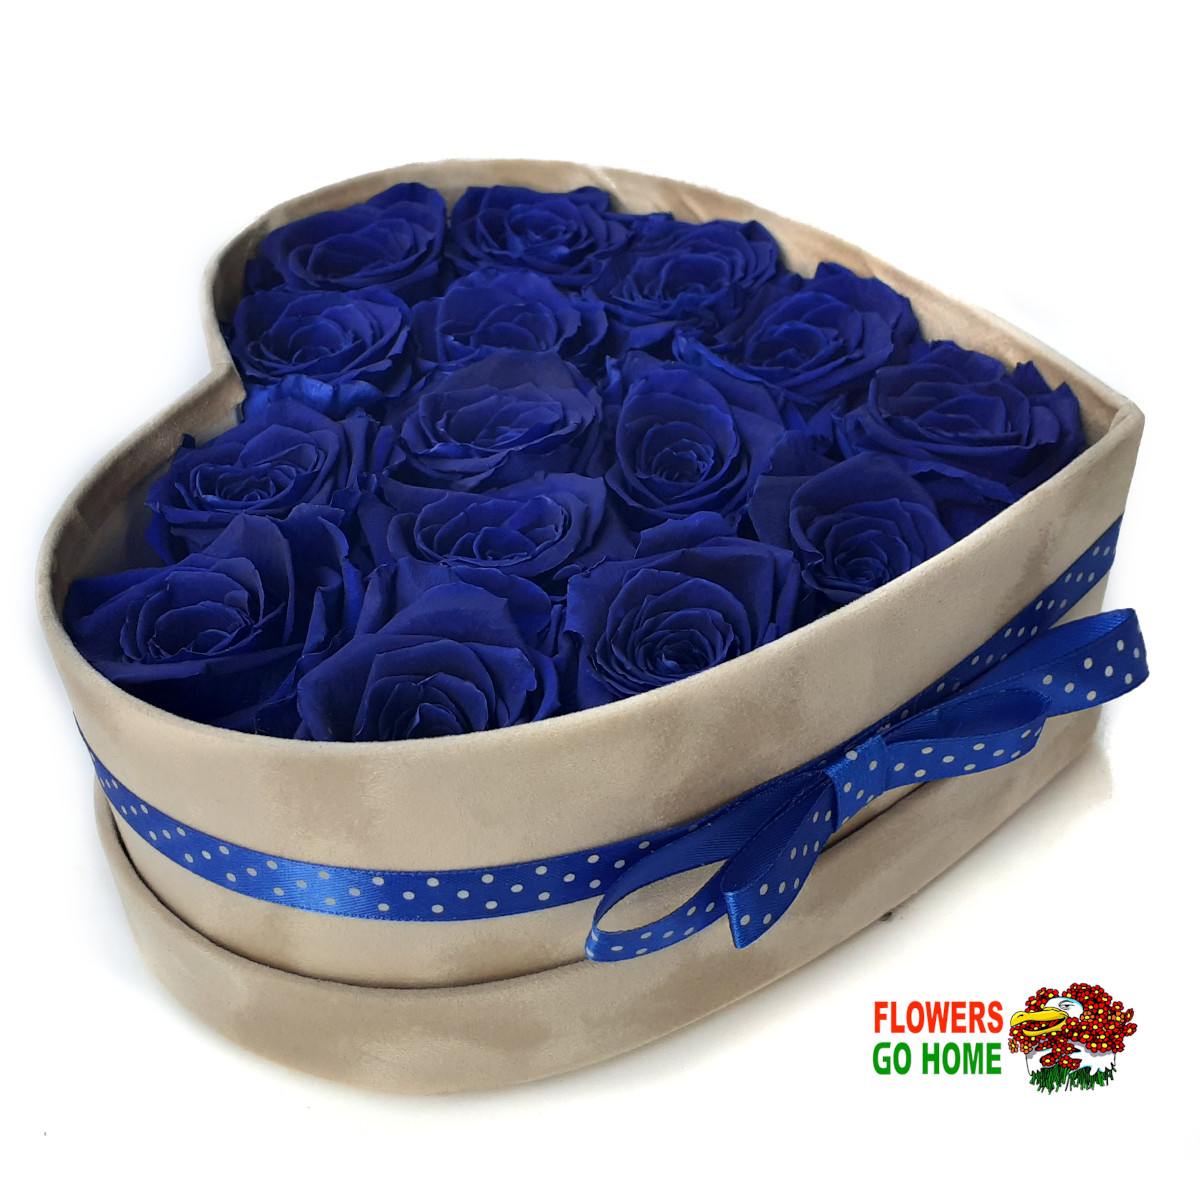 Stabilizovaná růže 14 - 16 ks Stabilizace zaručuje životnost min. 2 roky Barva: Royale blue